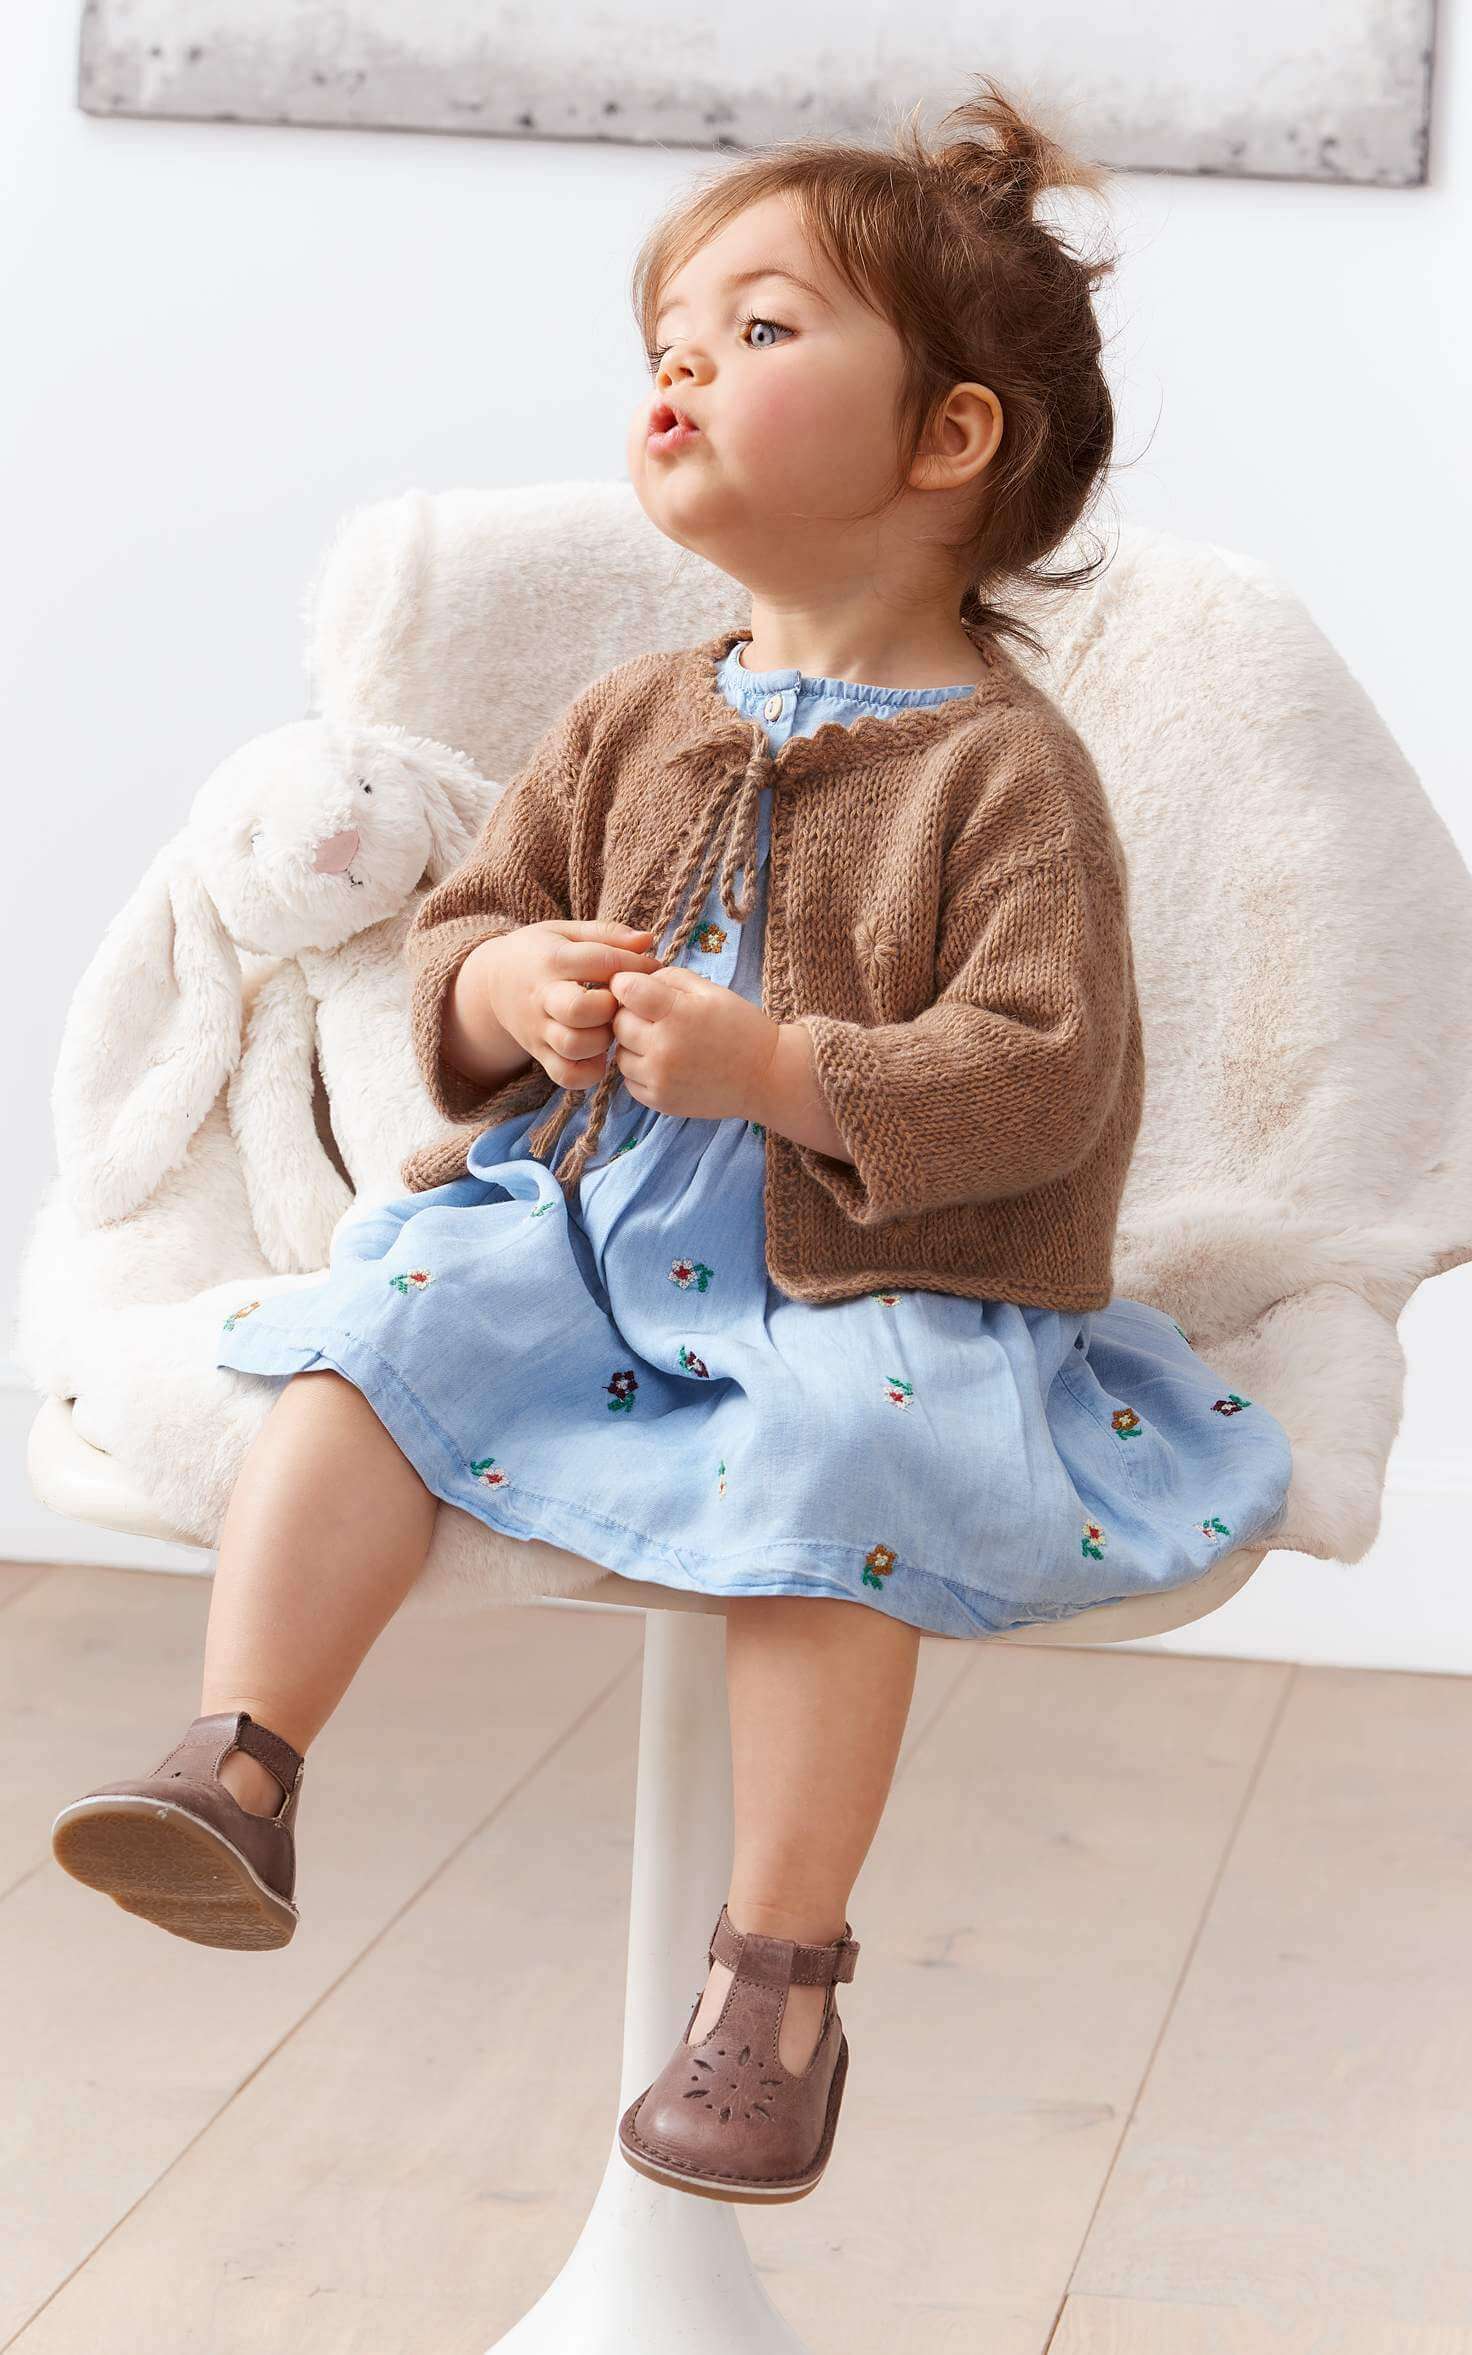 Baby Jacke mit gestickten Blümchen - Strickset von LANA GROSSA jetzt online kaufen bei OONIQUE